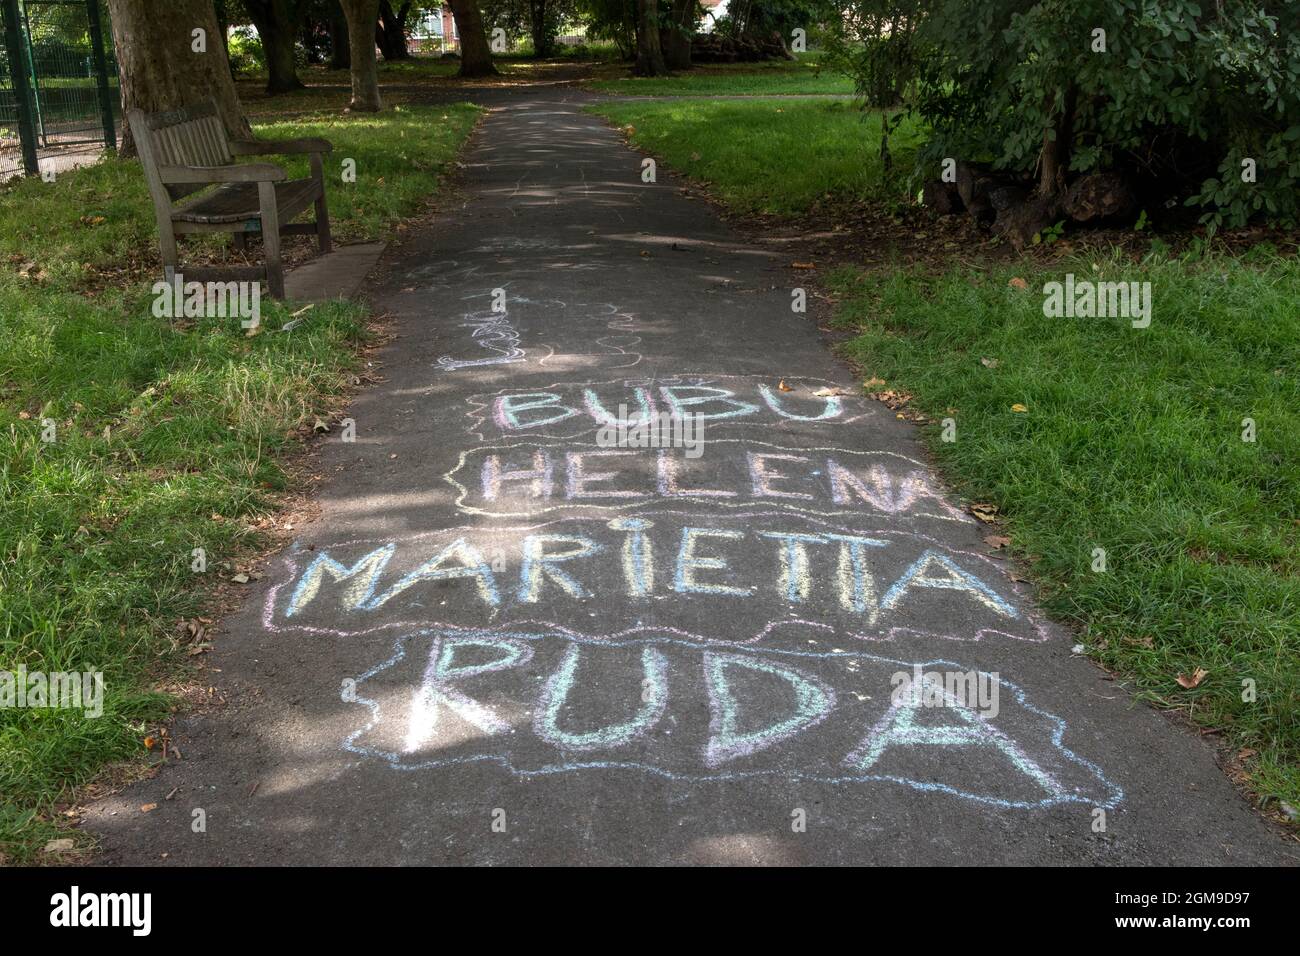 Les premiers noms des enfants ont craché sur un trottoir dans un parc, Bubu, Helena, Marietta et Ruda. Le visage changeant de la Grande-Bretagne. 2021 2020 Londres HOMER SYKES Banque D'Images